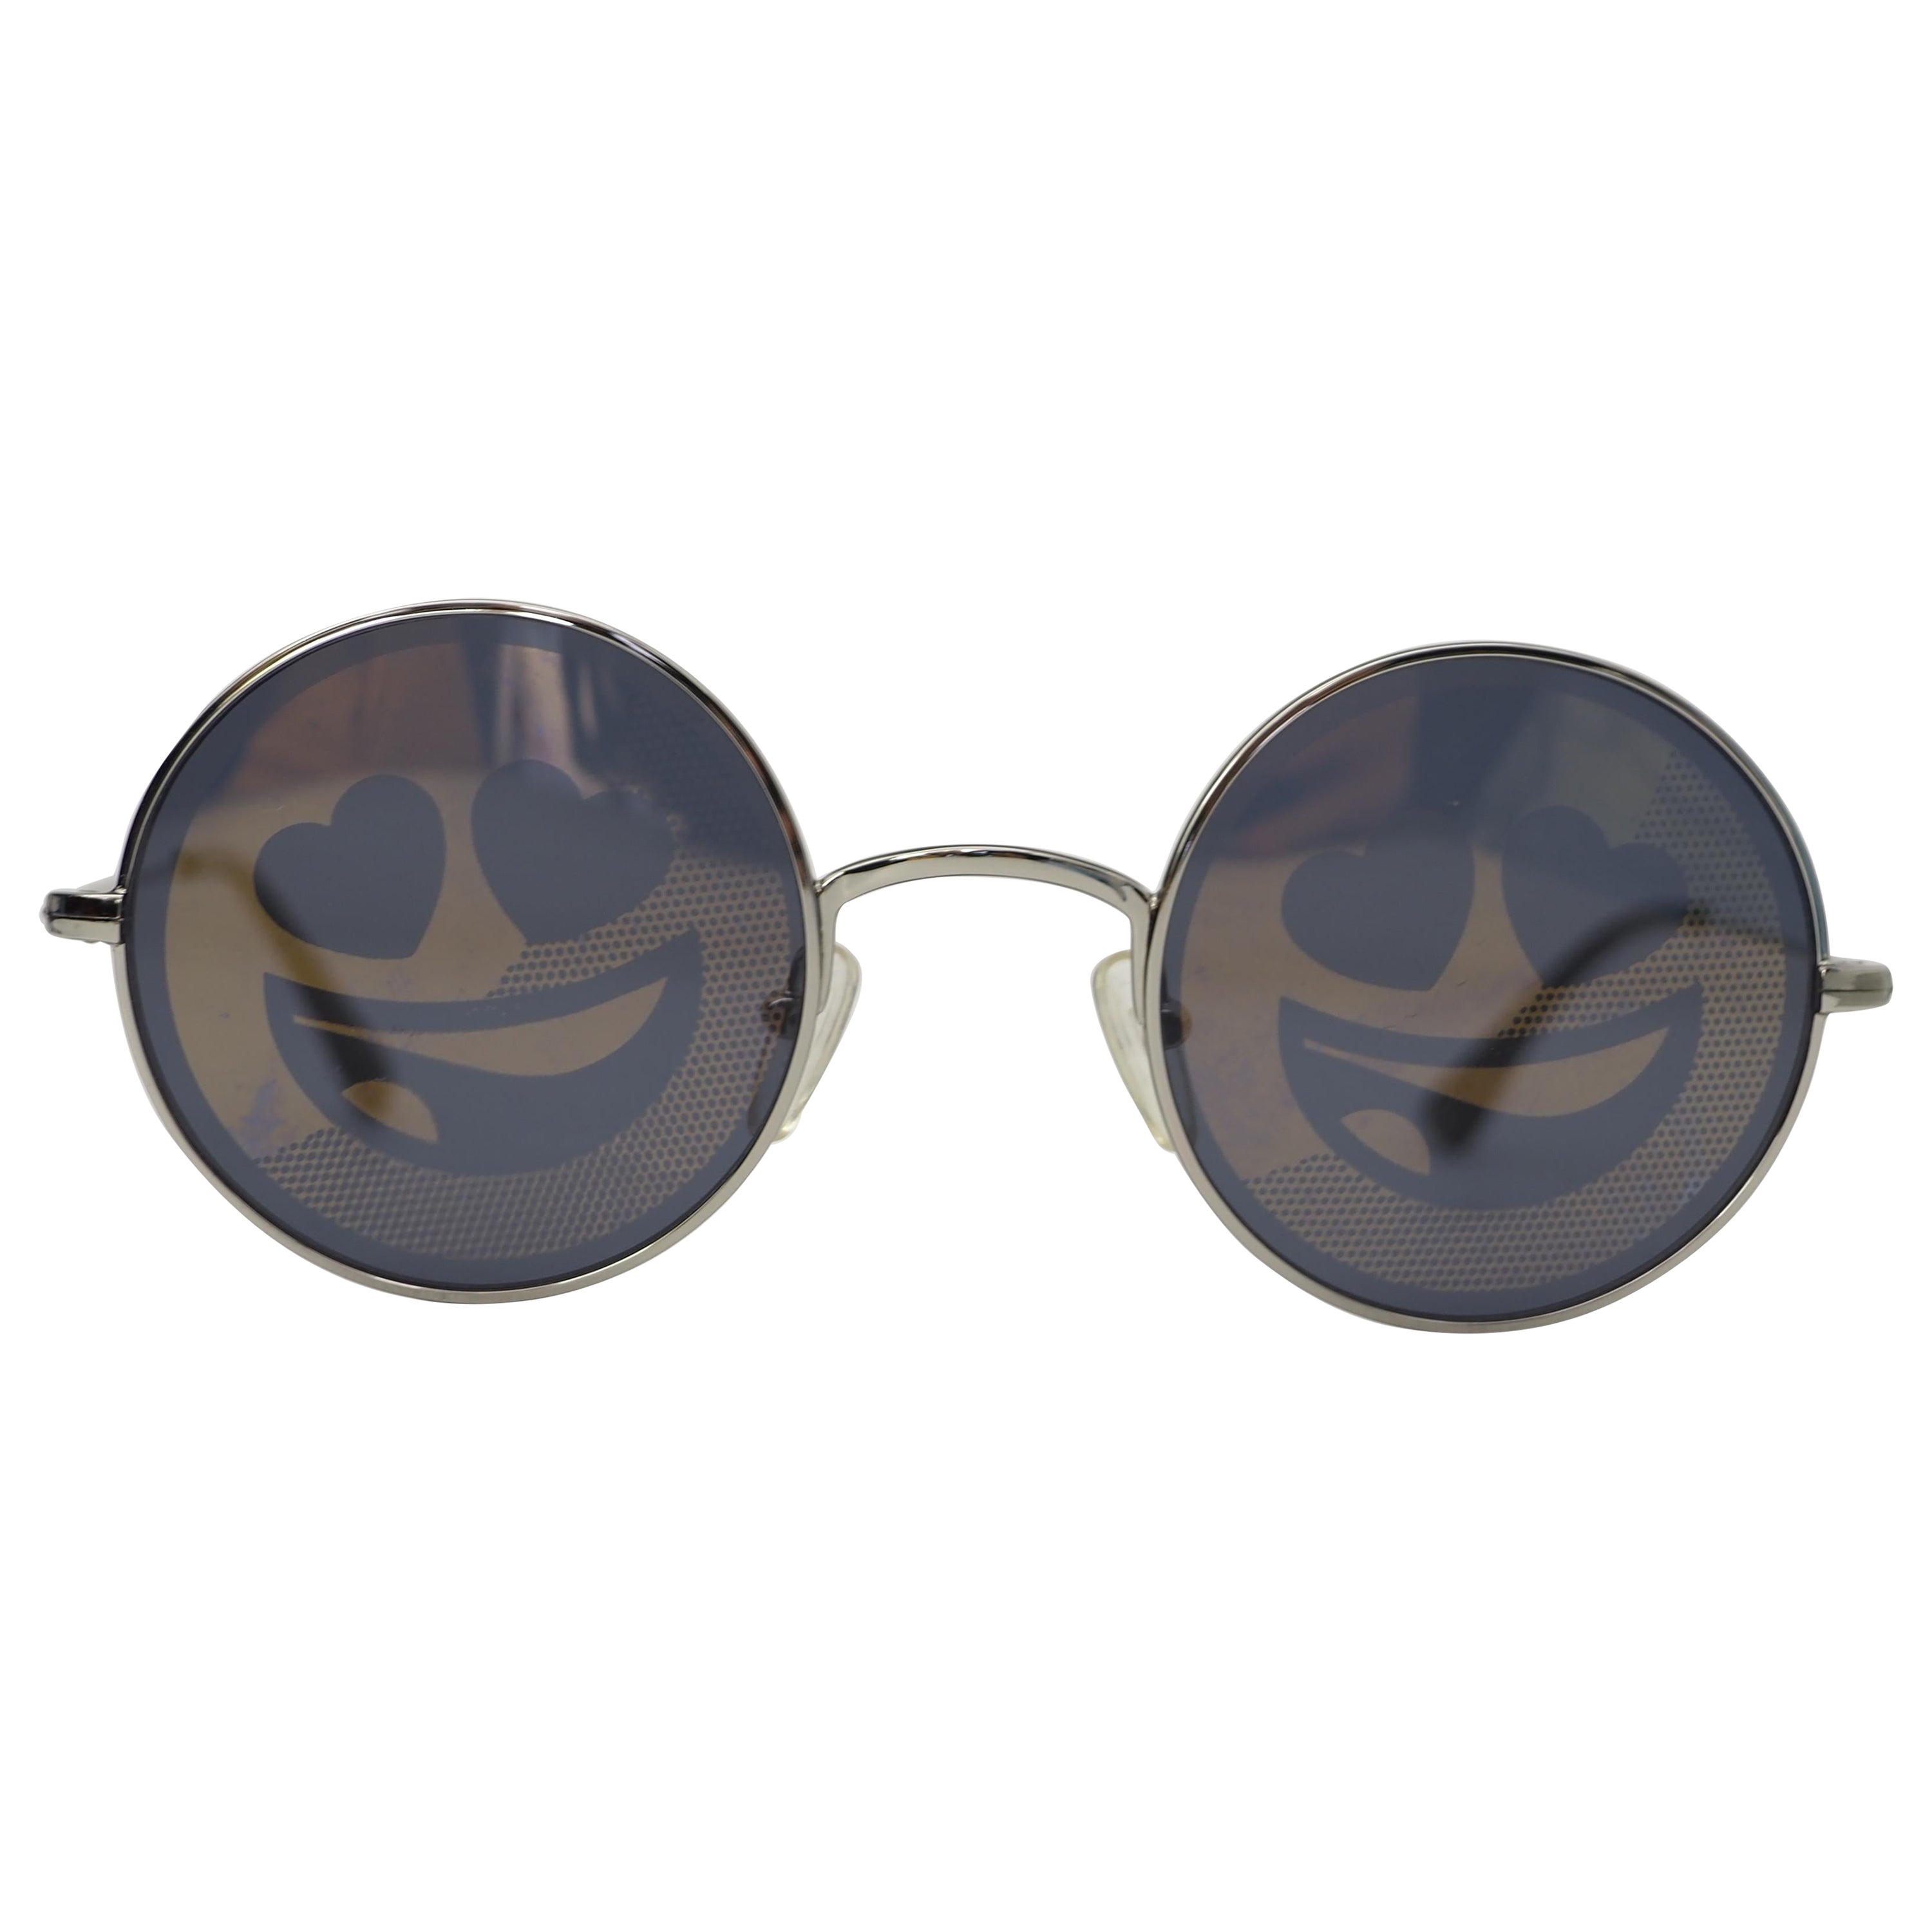 Jeremy Scotto lächelt mit Sonnenbrille